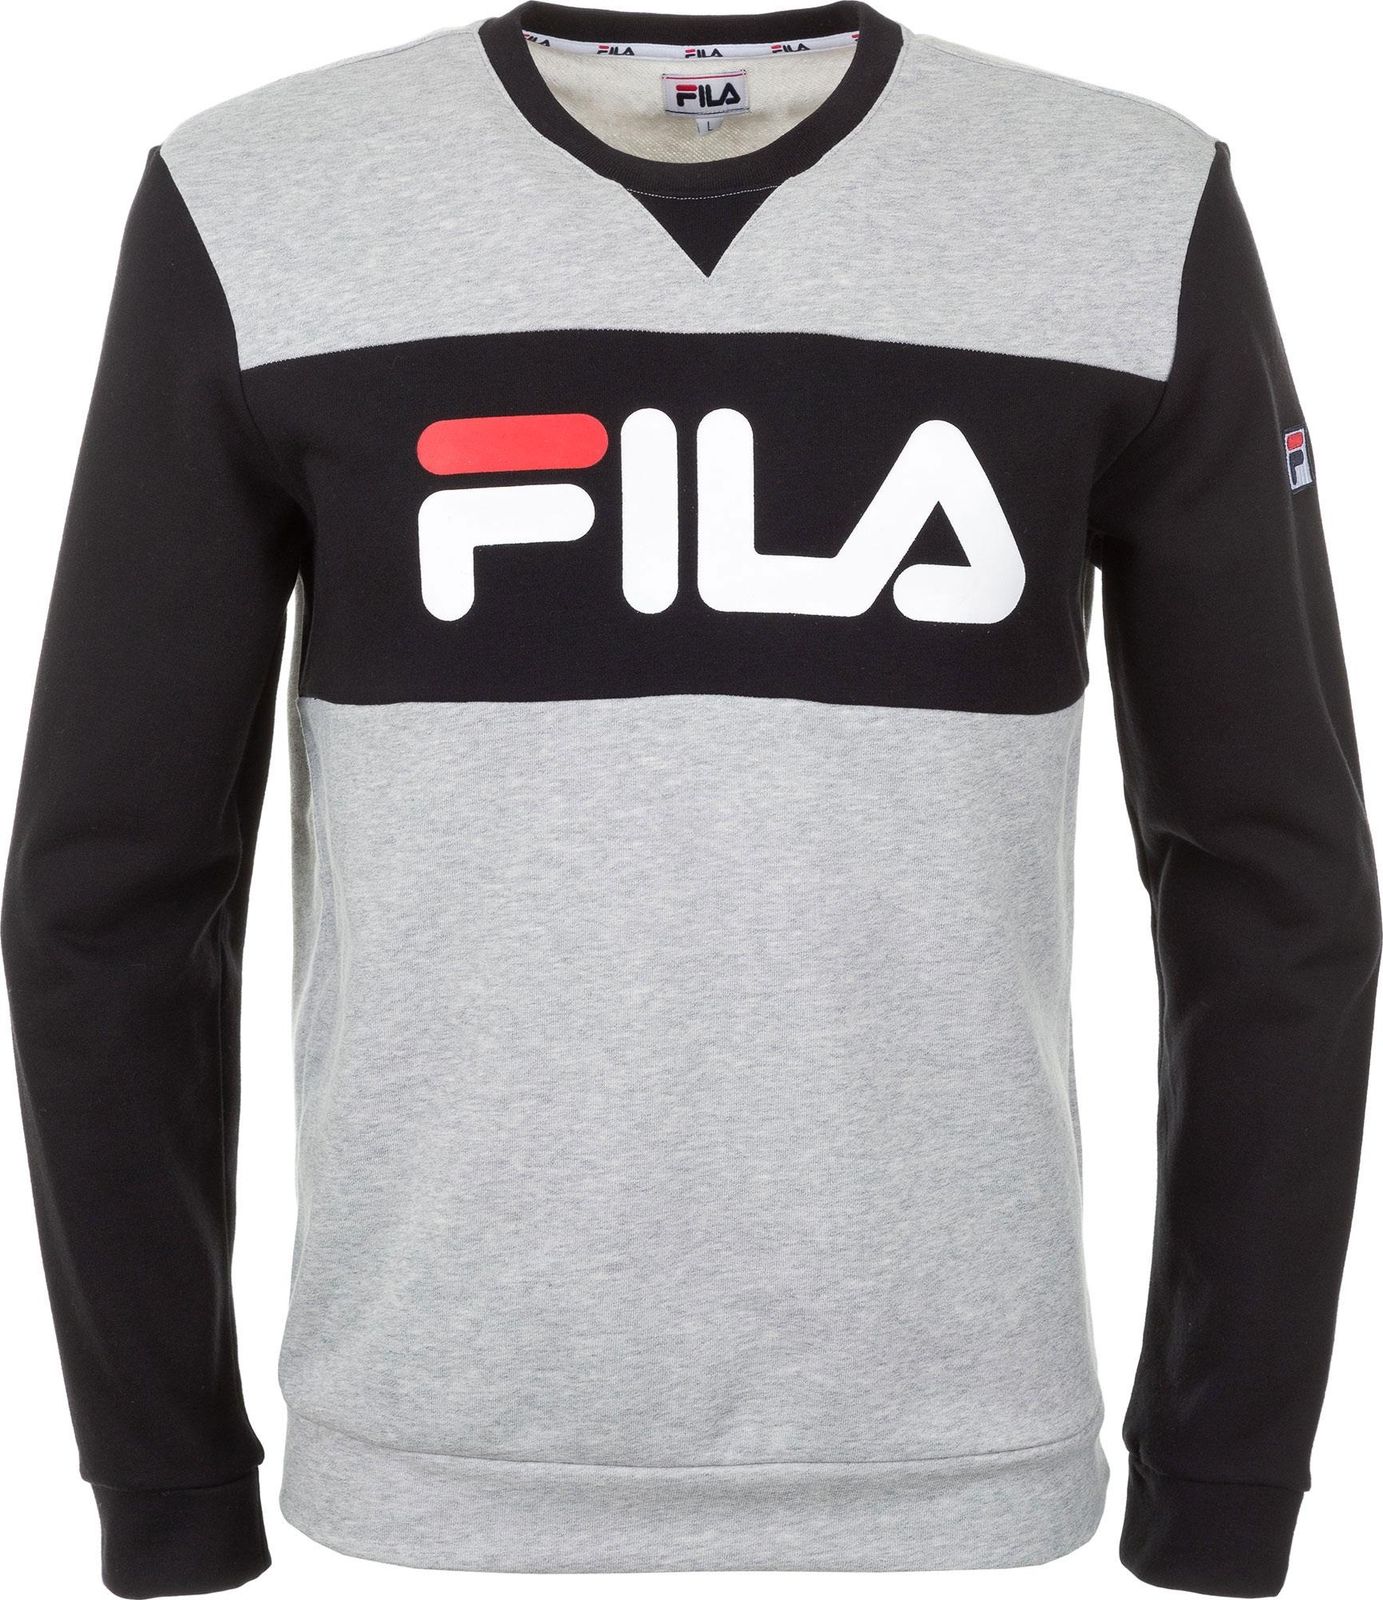   Fila Men's jumper, : . S19AFLJUM08-2A.  L (50)